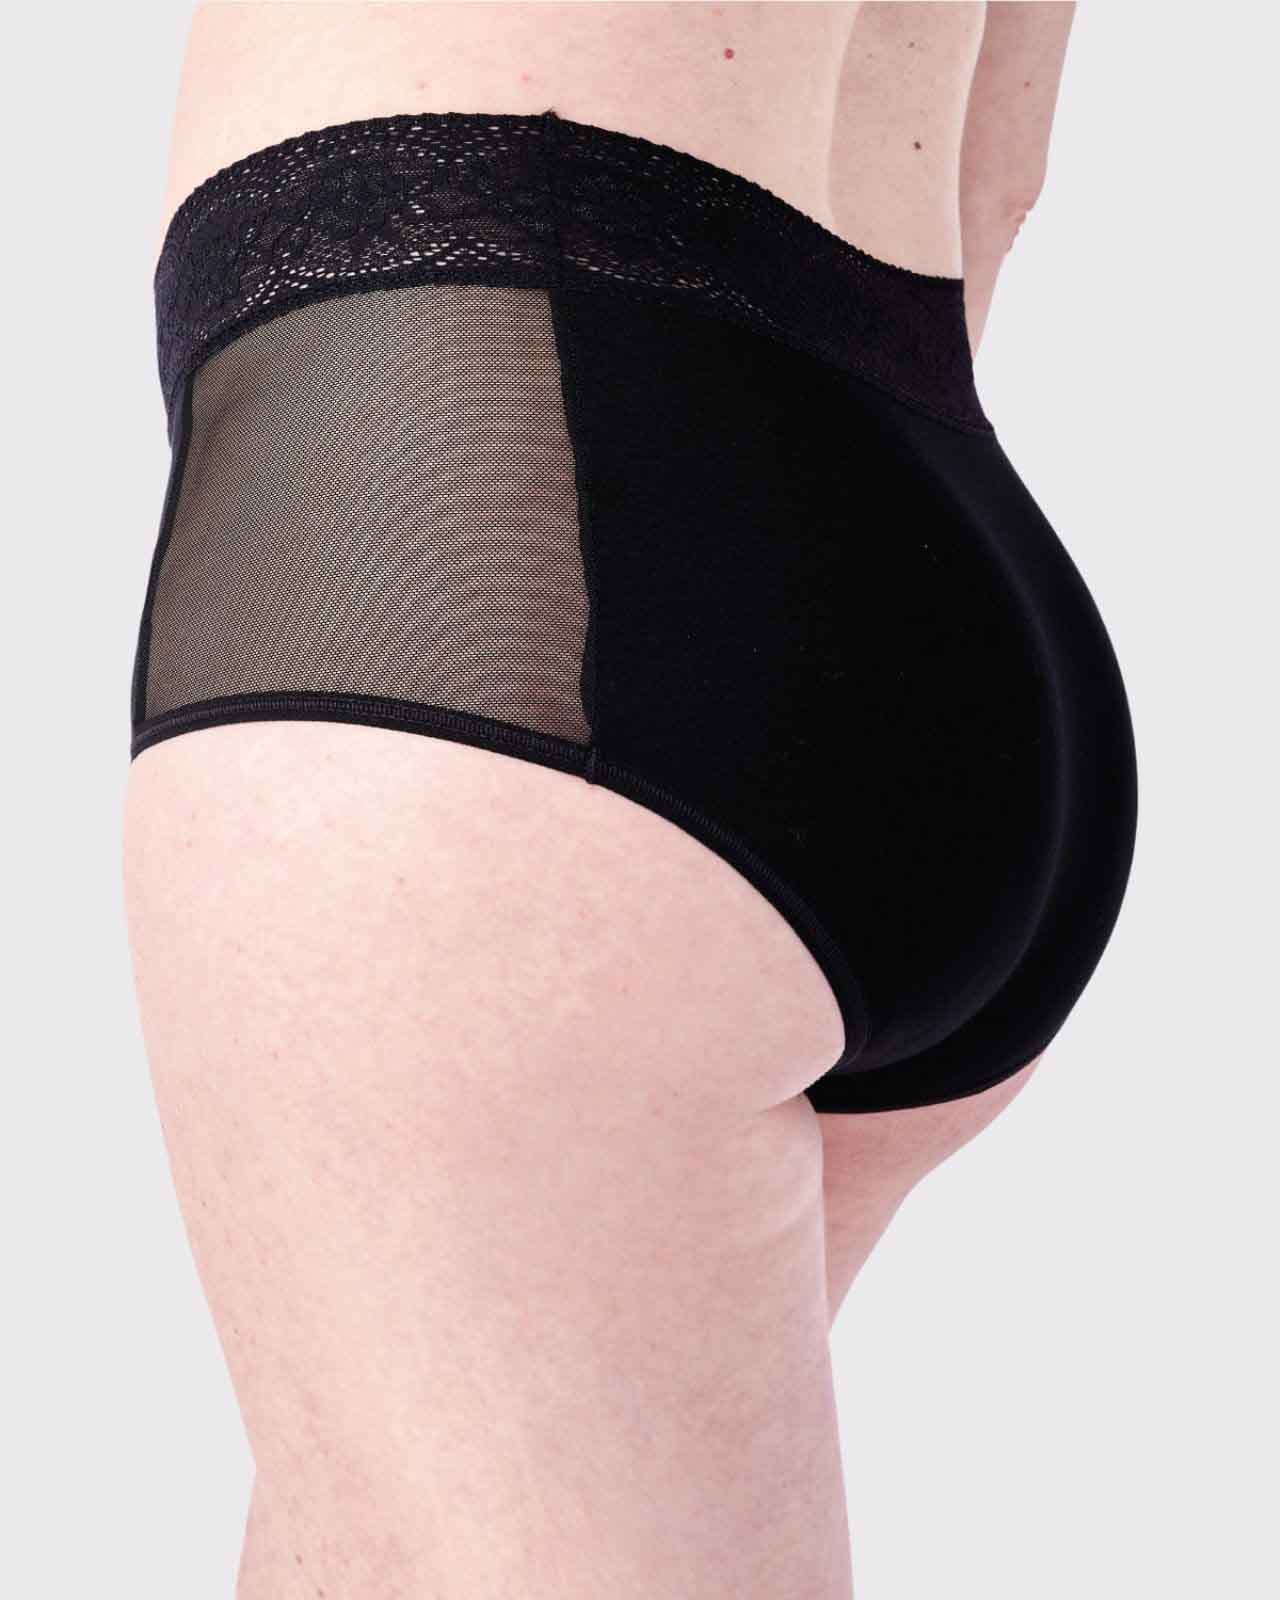 High waist keyhole panties Soft mesh sheer lingerie Women's sexy